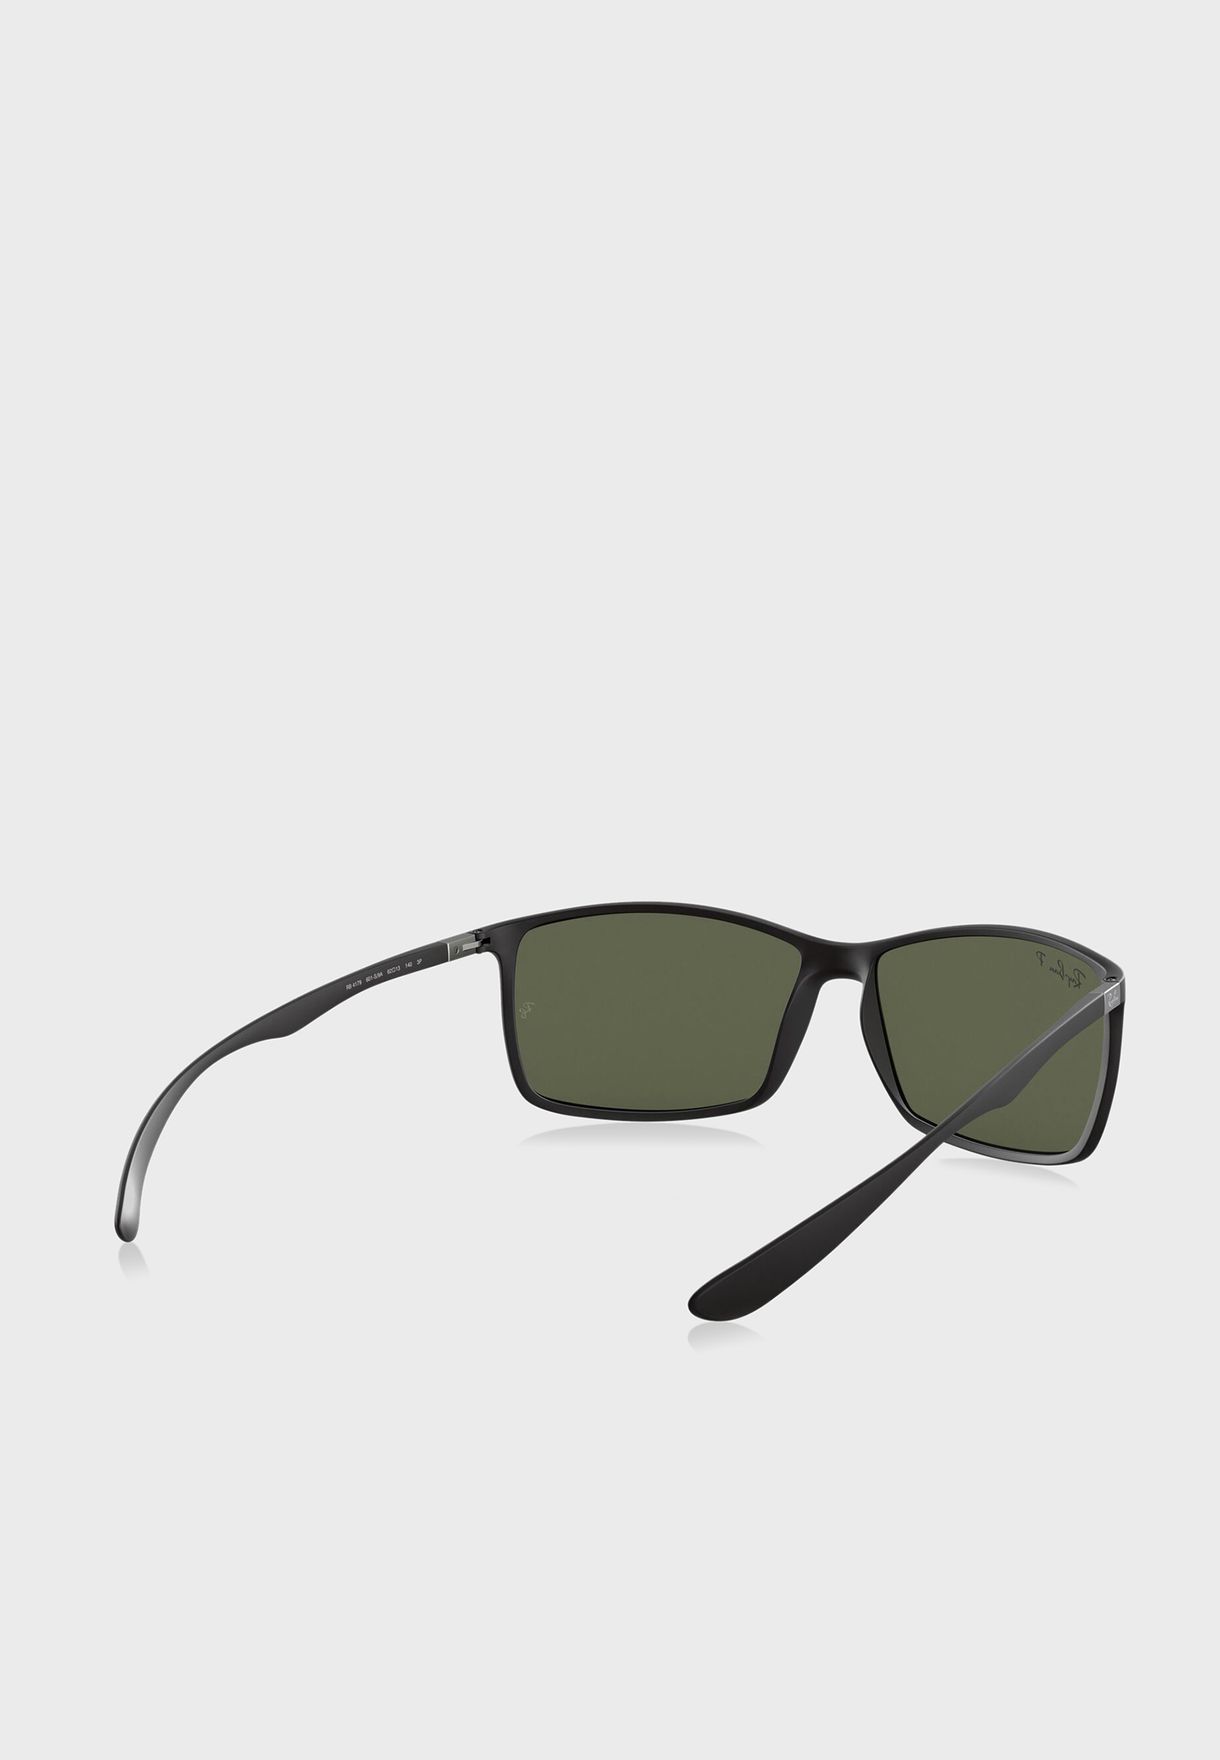 0Rb4179 Square Sunglasses